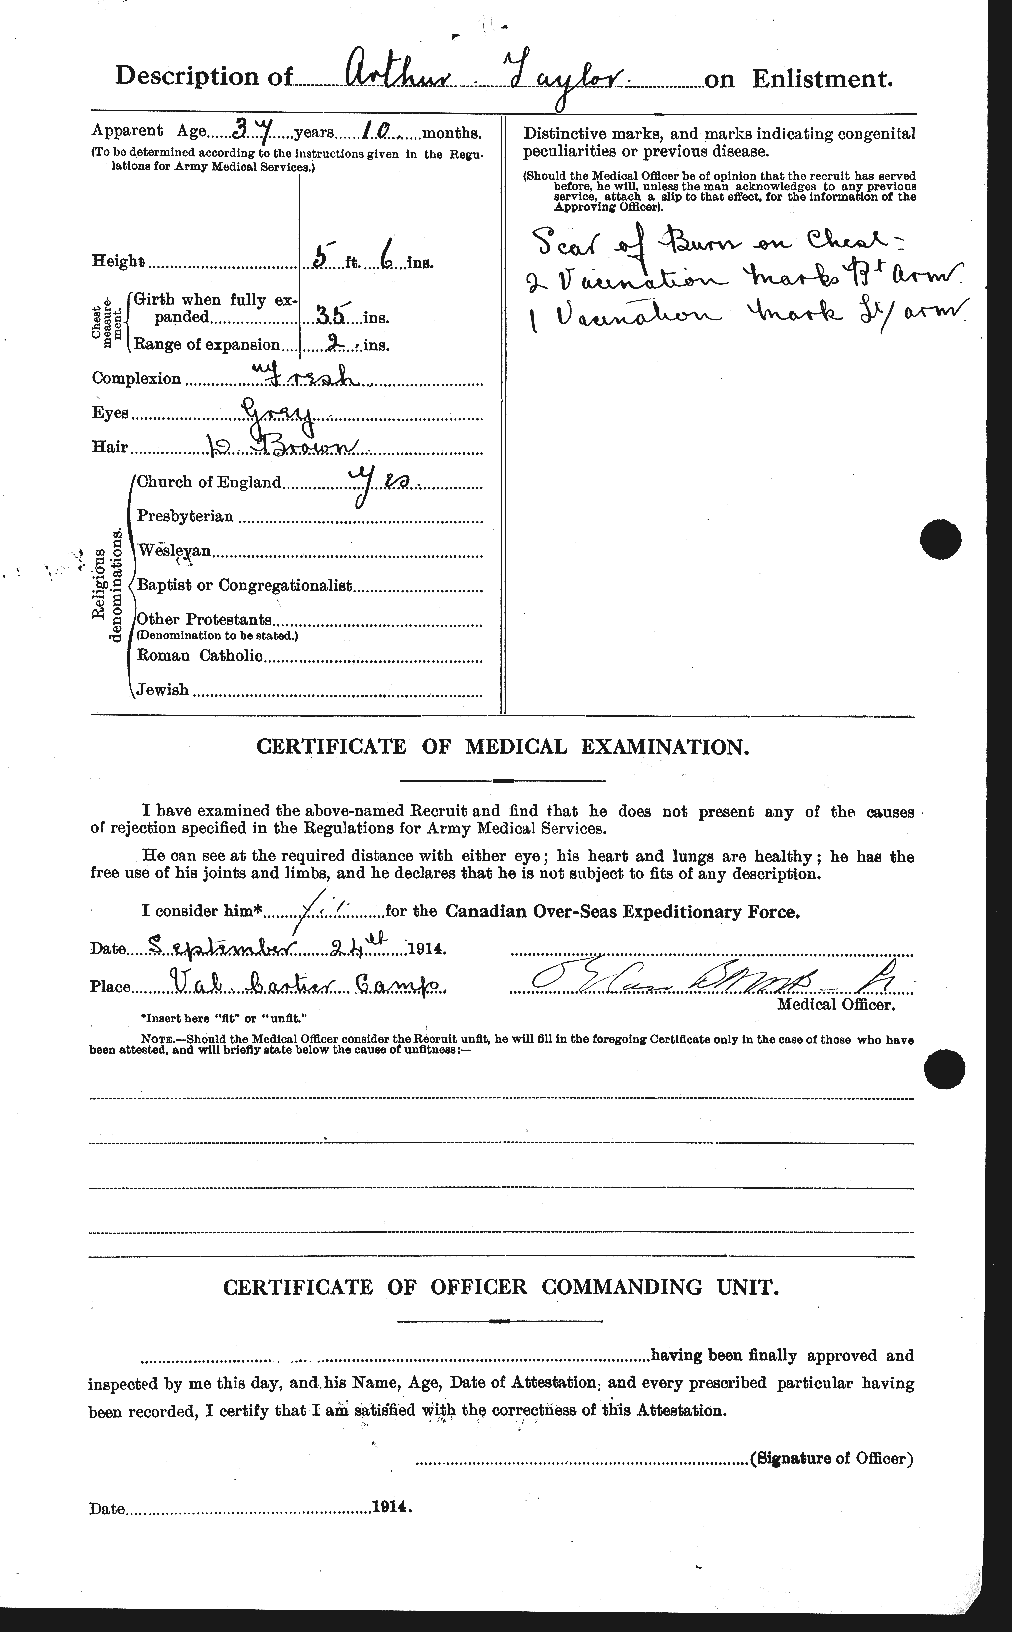 Dossiers du Personnel de la Première Guerre mondiale - CEC 626699b